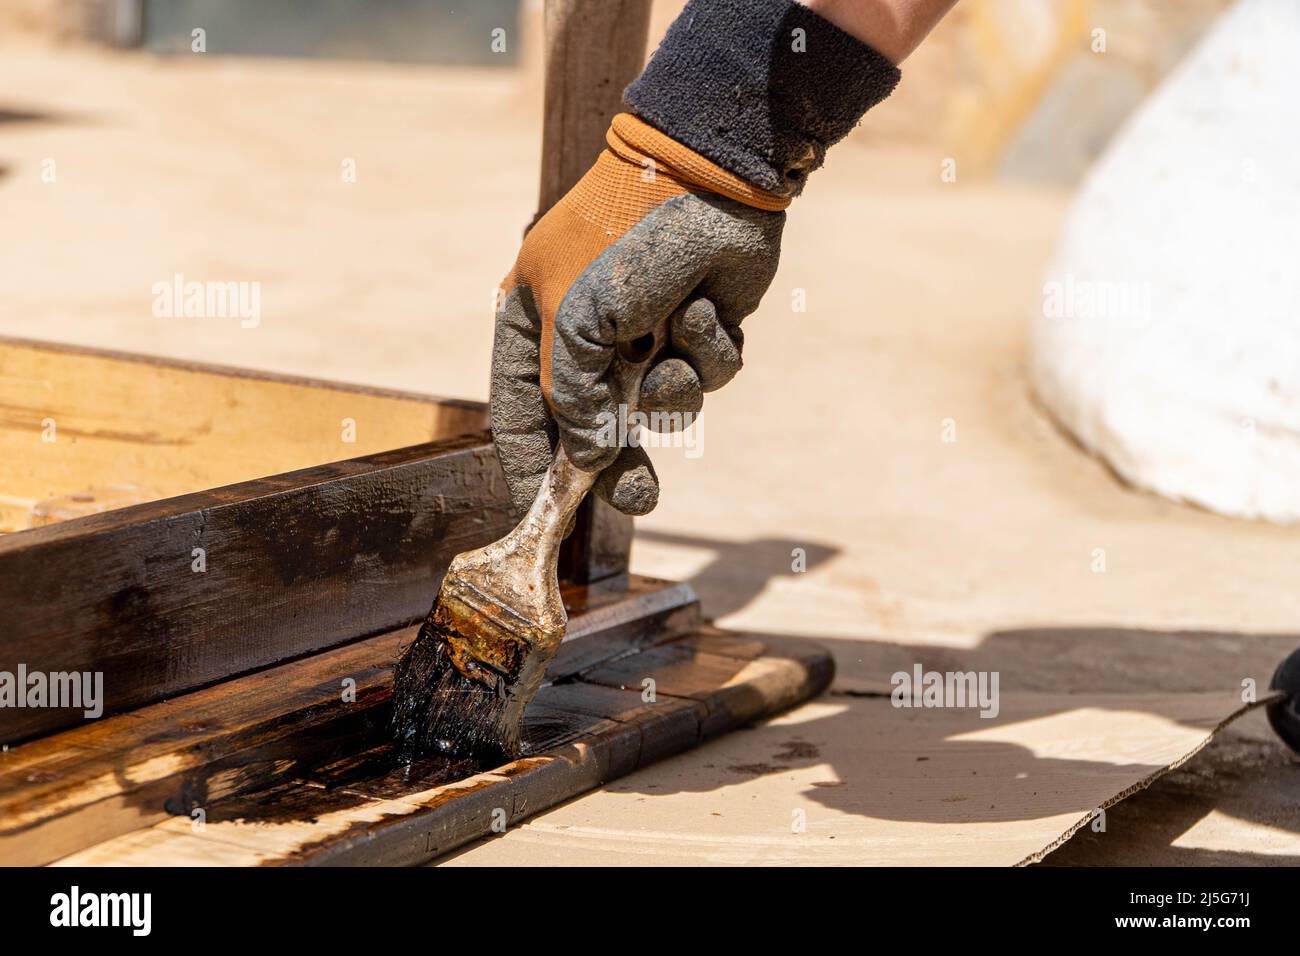 Homme travaillant sur la restauration des anciennes forniture à l'aide de bitume judaicum. Concept de l'entretien du bois et de l'imperméabilisation Banque D'Images